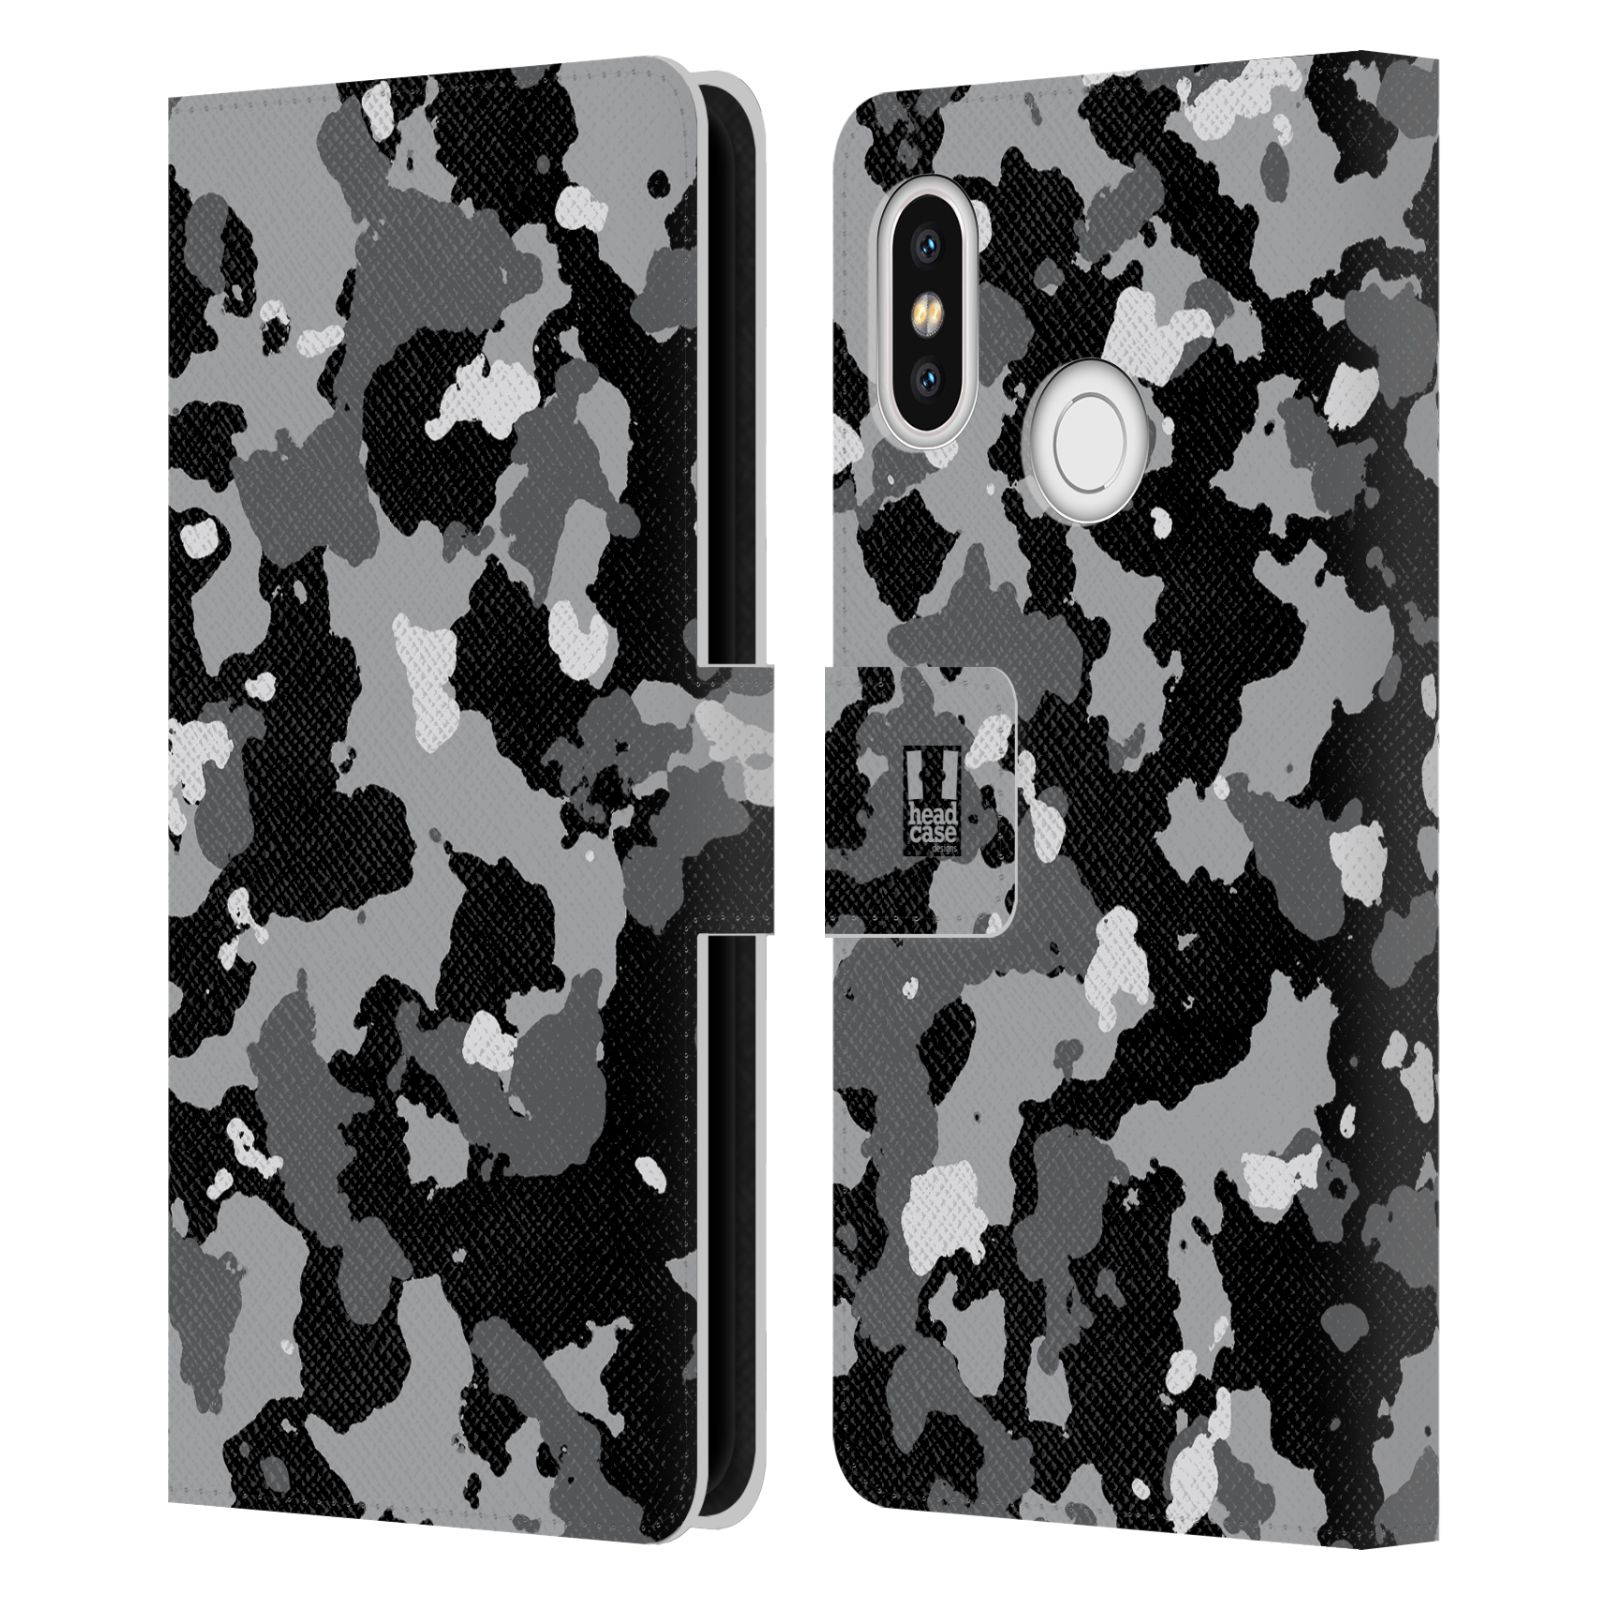 Pouzdro na mobil Xiaomi Mi 8 - Head Case - kamuflaž černá a šedá